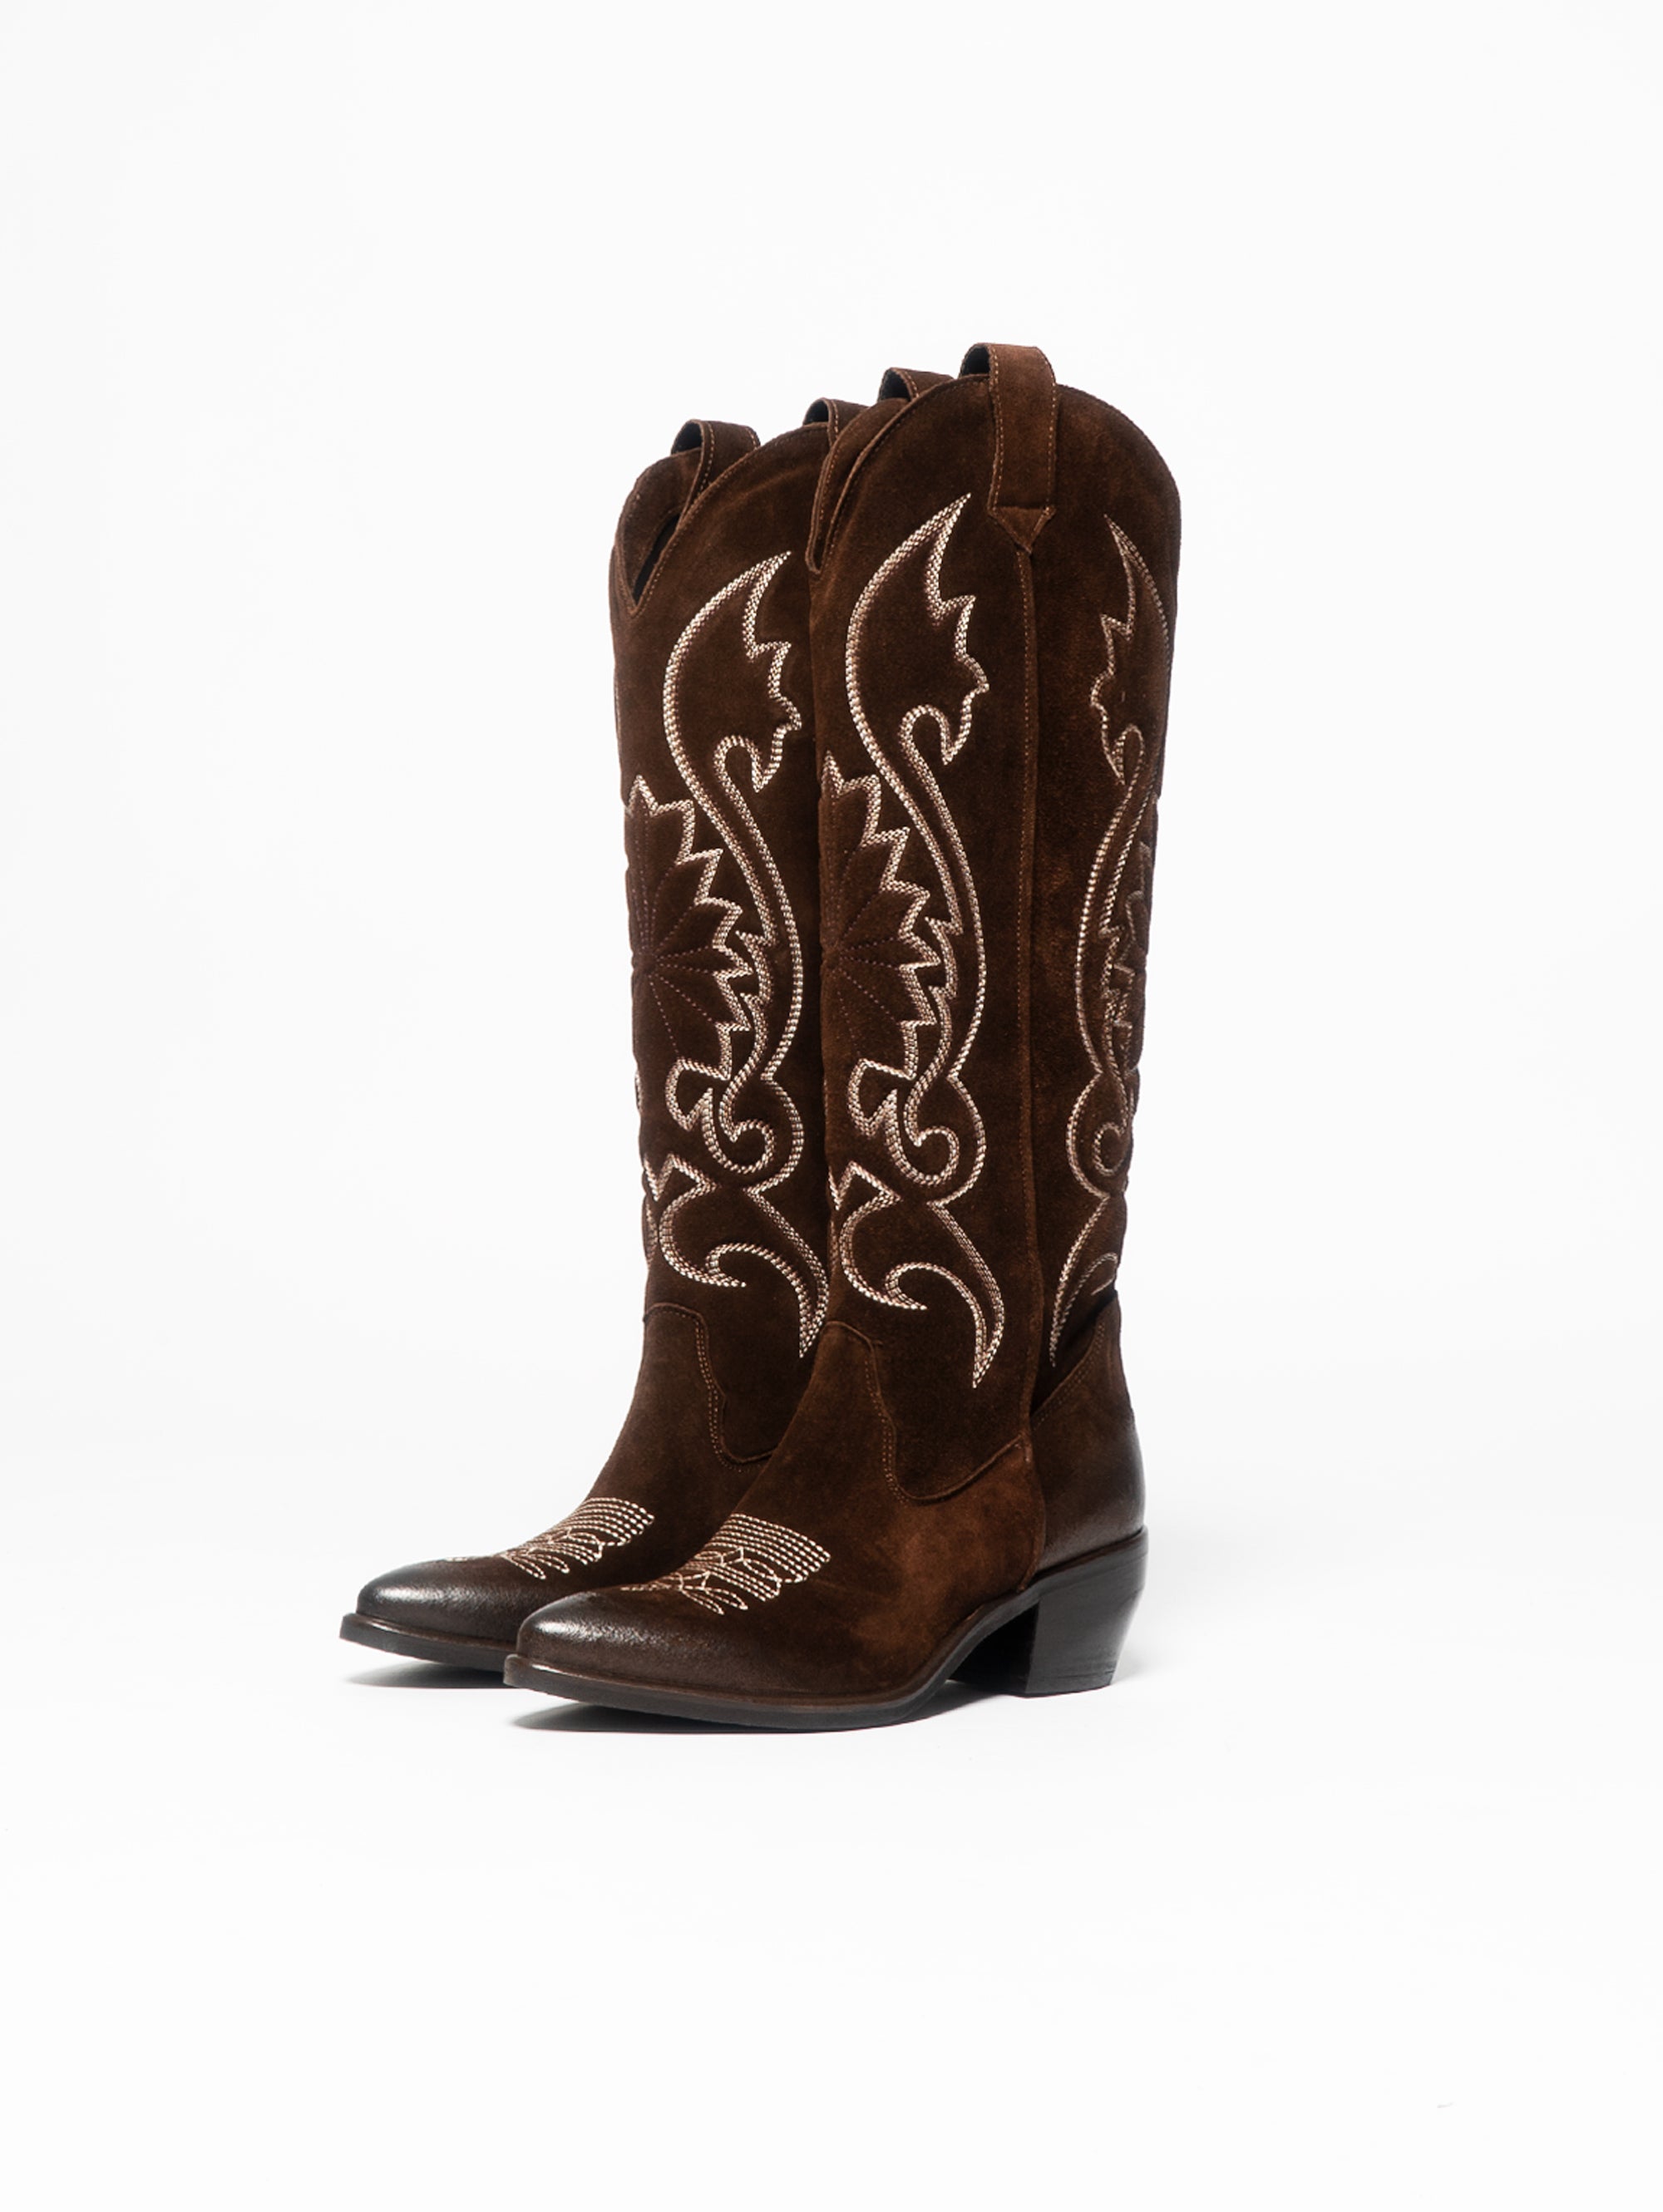 Stivali Texano stile Western Testa di Moro